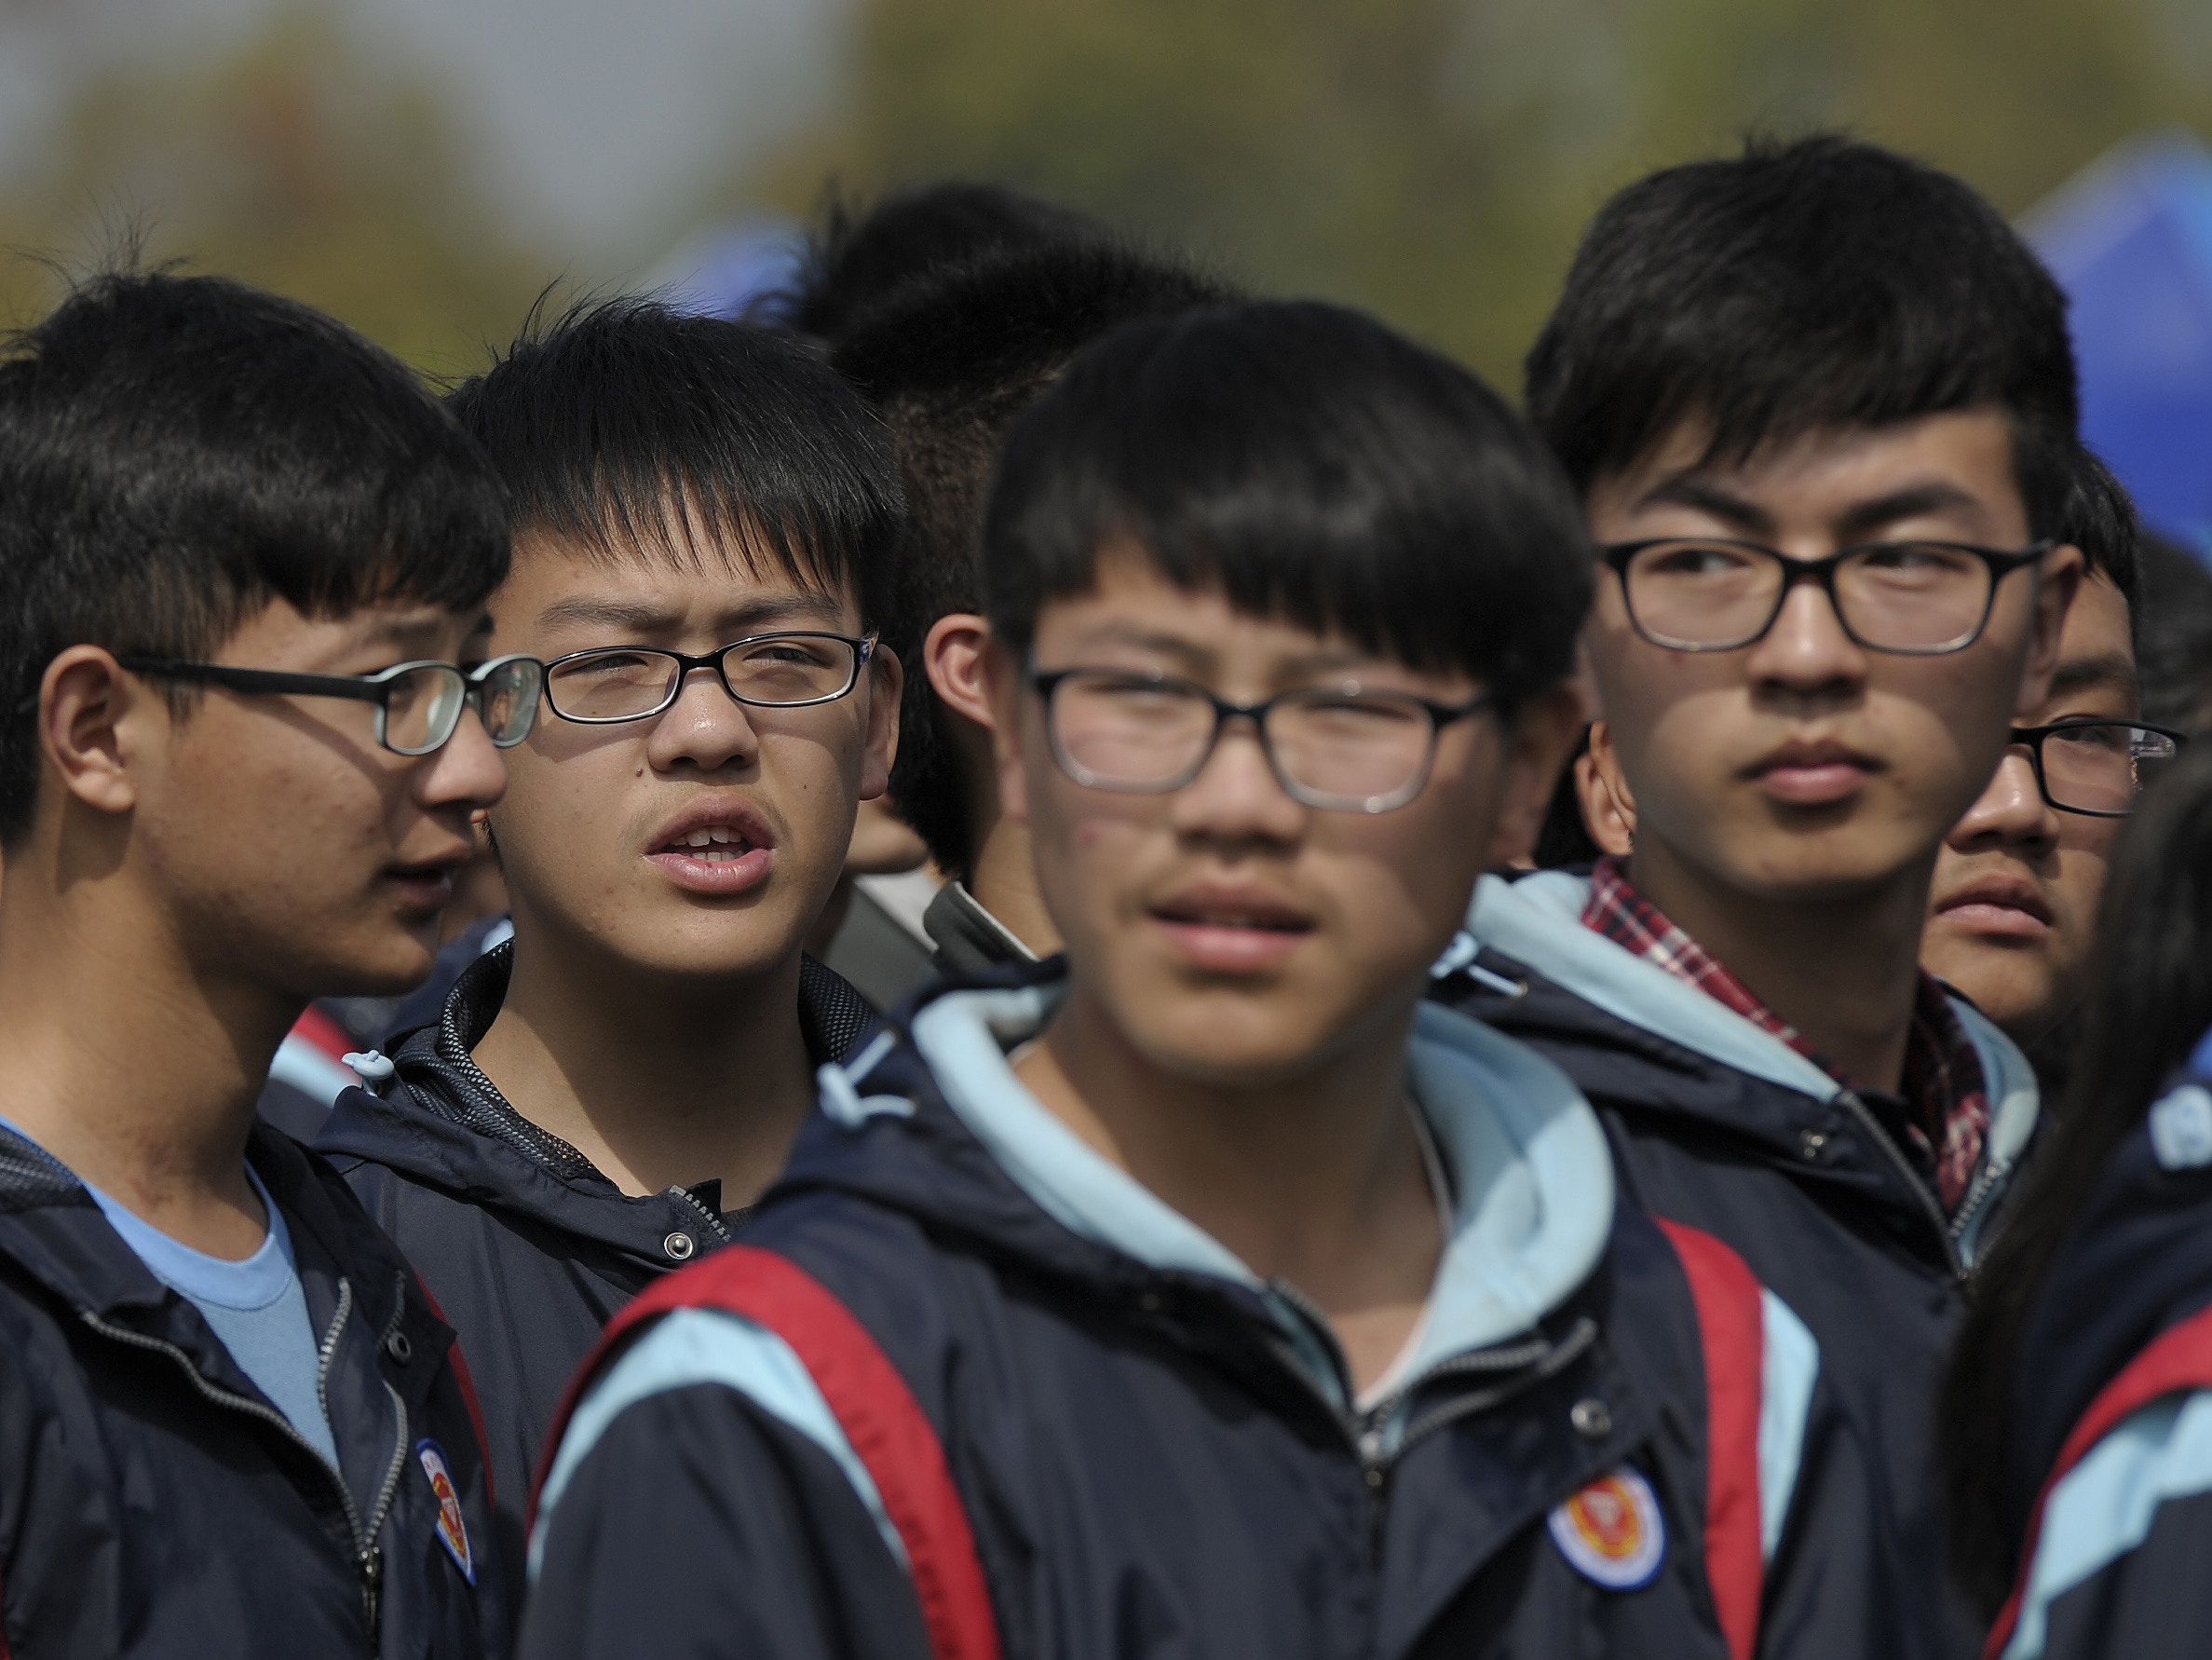 教育部 中小學生視力不良率升至70 6 近9成高中生視力不良 香港01 即時中國